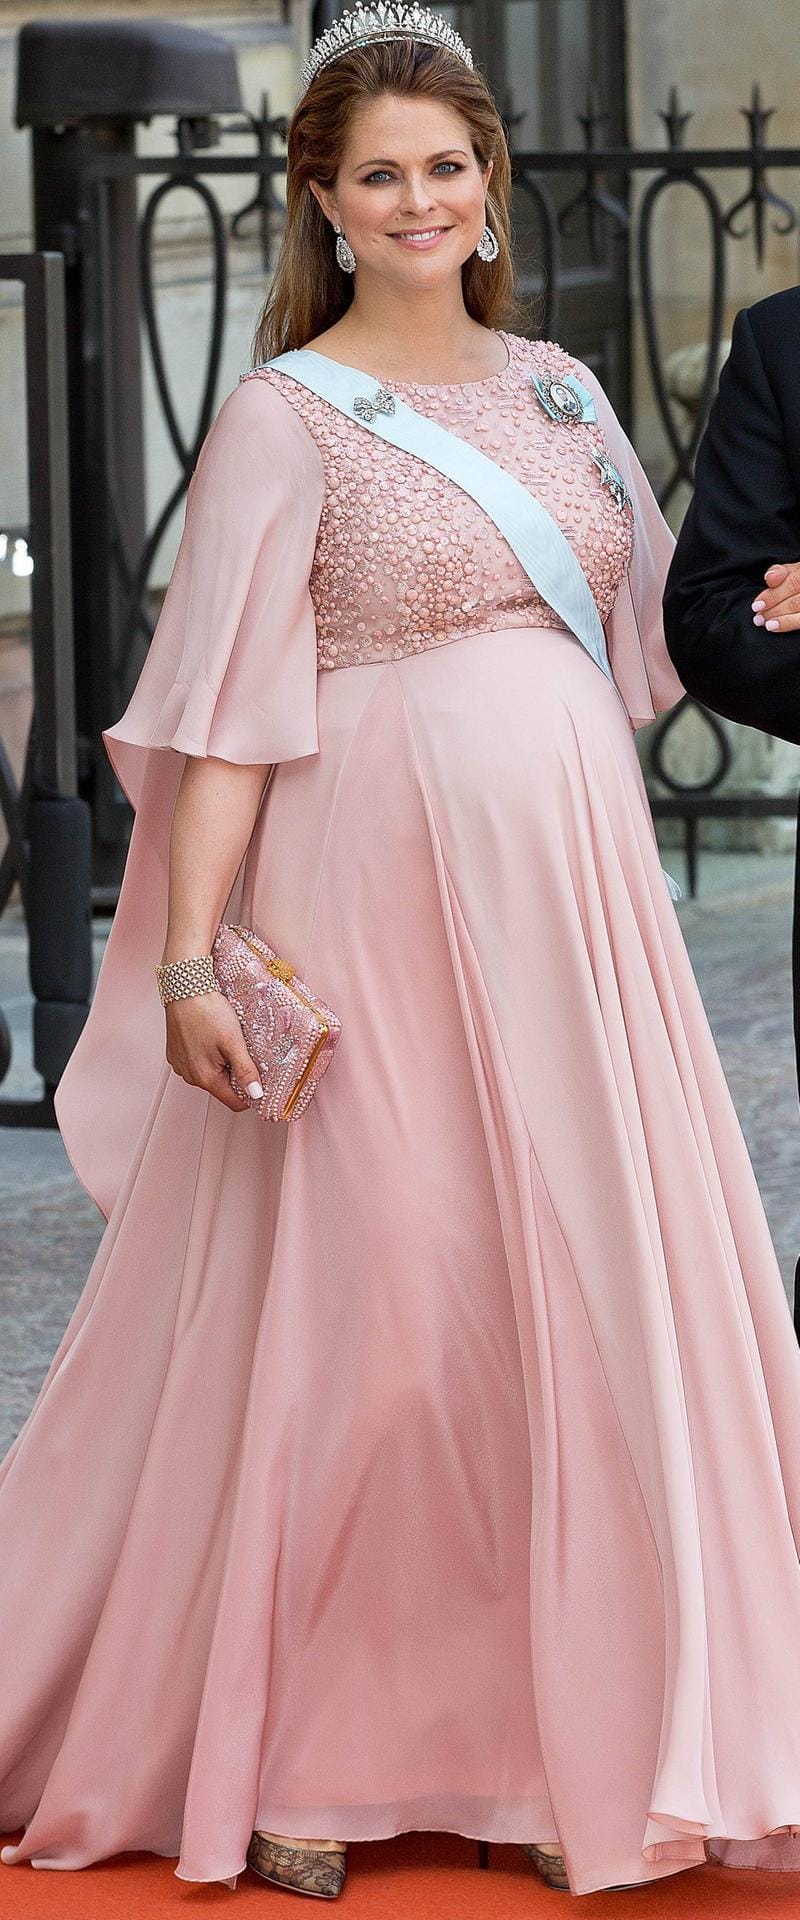 Prinzessin Madeleine im Juni 2015 bei der Hochzeit von Prinz Carl Philip